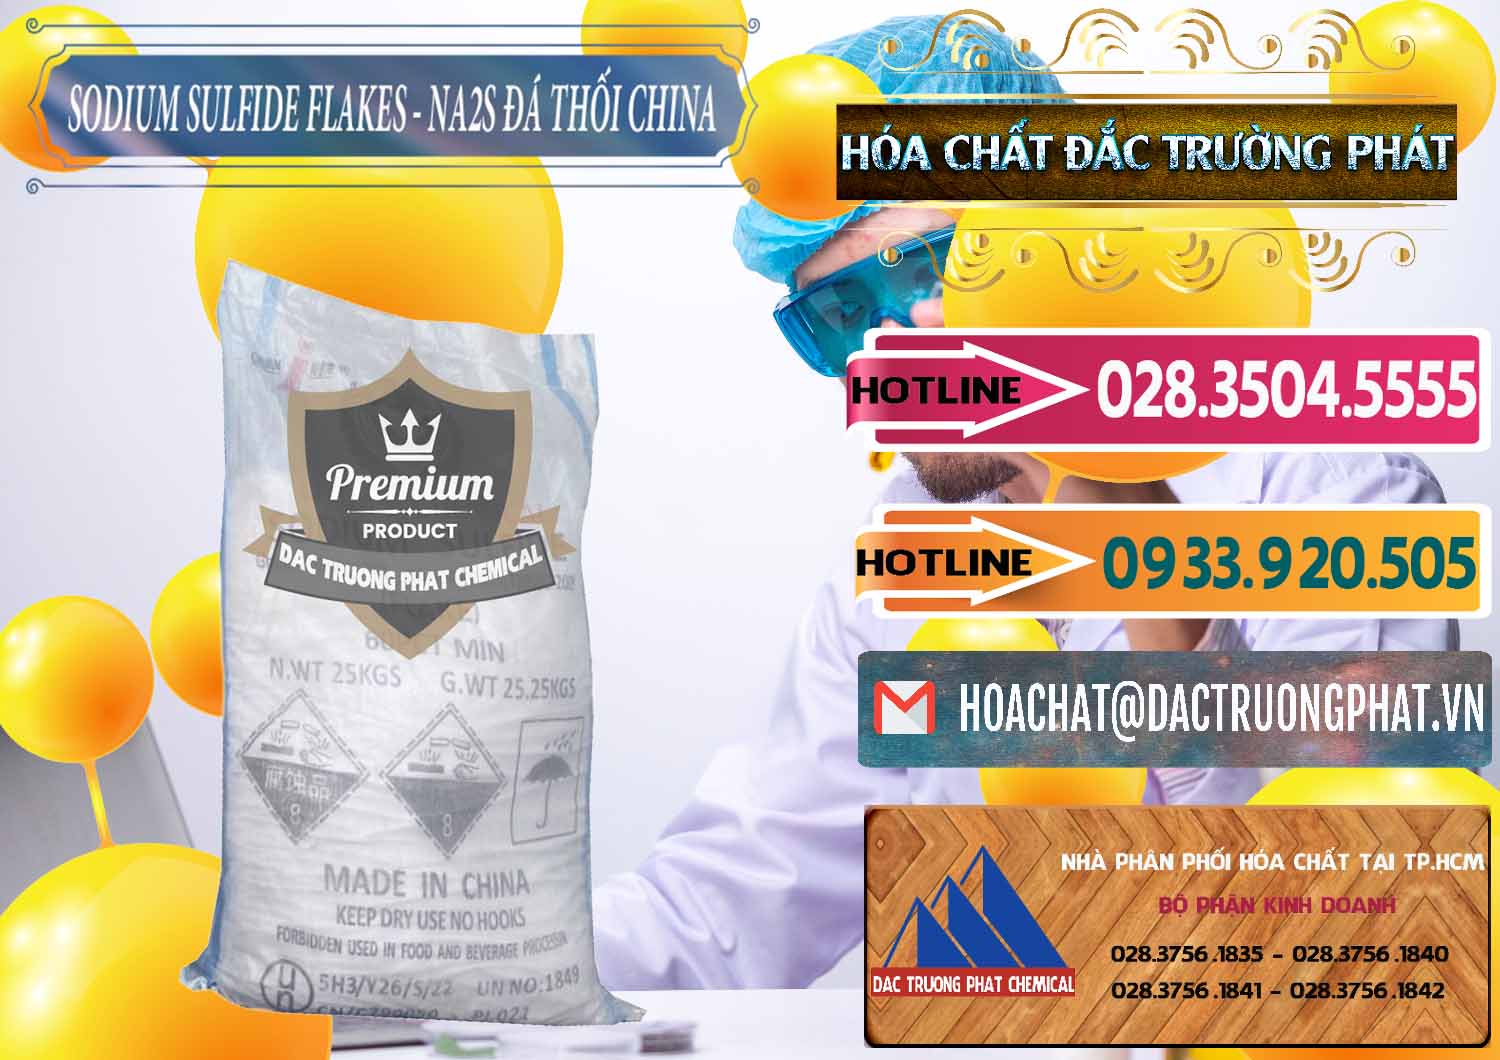 Nơi chuyên bán - cung cấp Sodium Sulfide NA2S – Đá Thối Liyuan Trung Quốc China - 0385 - Cty chuyên kinh doanh - cung cấp hóa chất tại TP.HCM - dactruongphat.vn